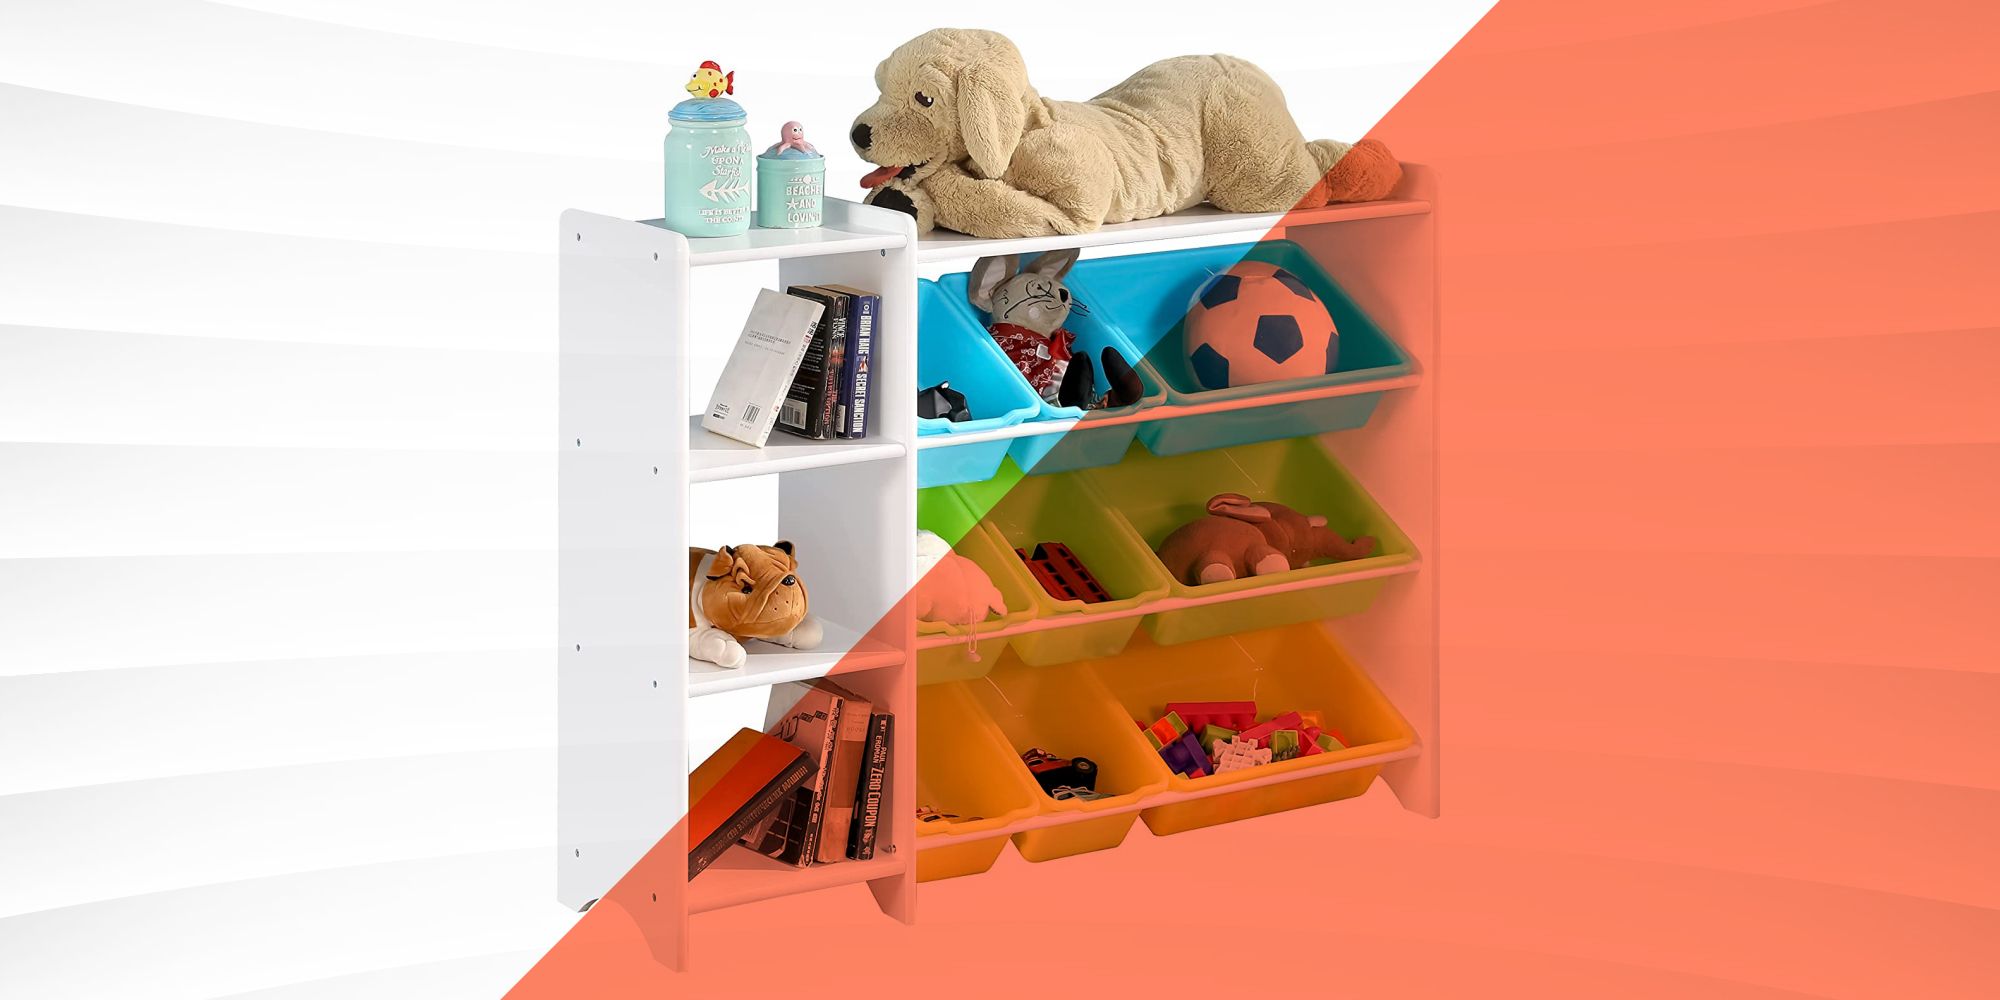 44 Best Toy Storage Ideas that Kids Will Love